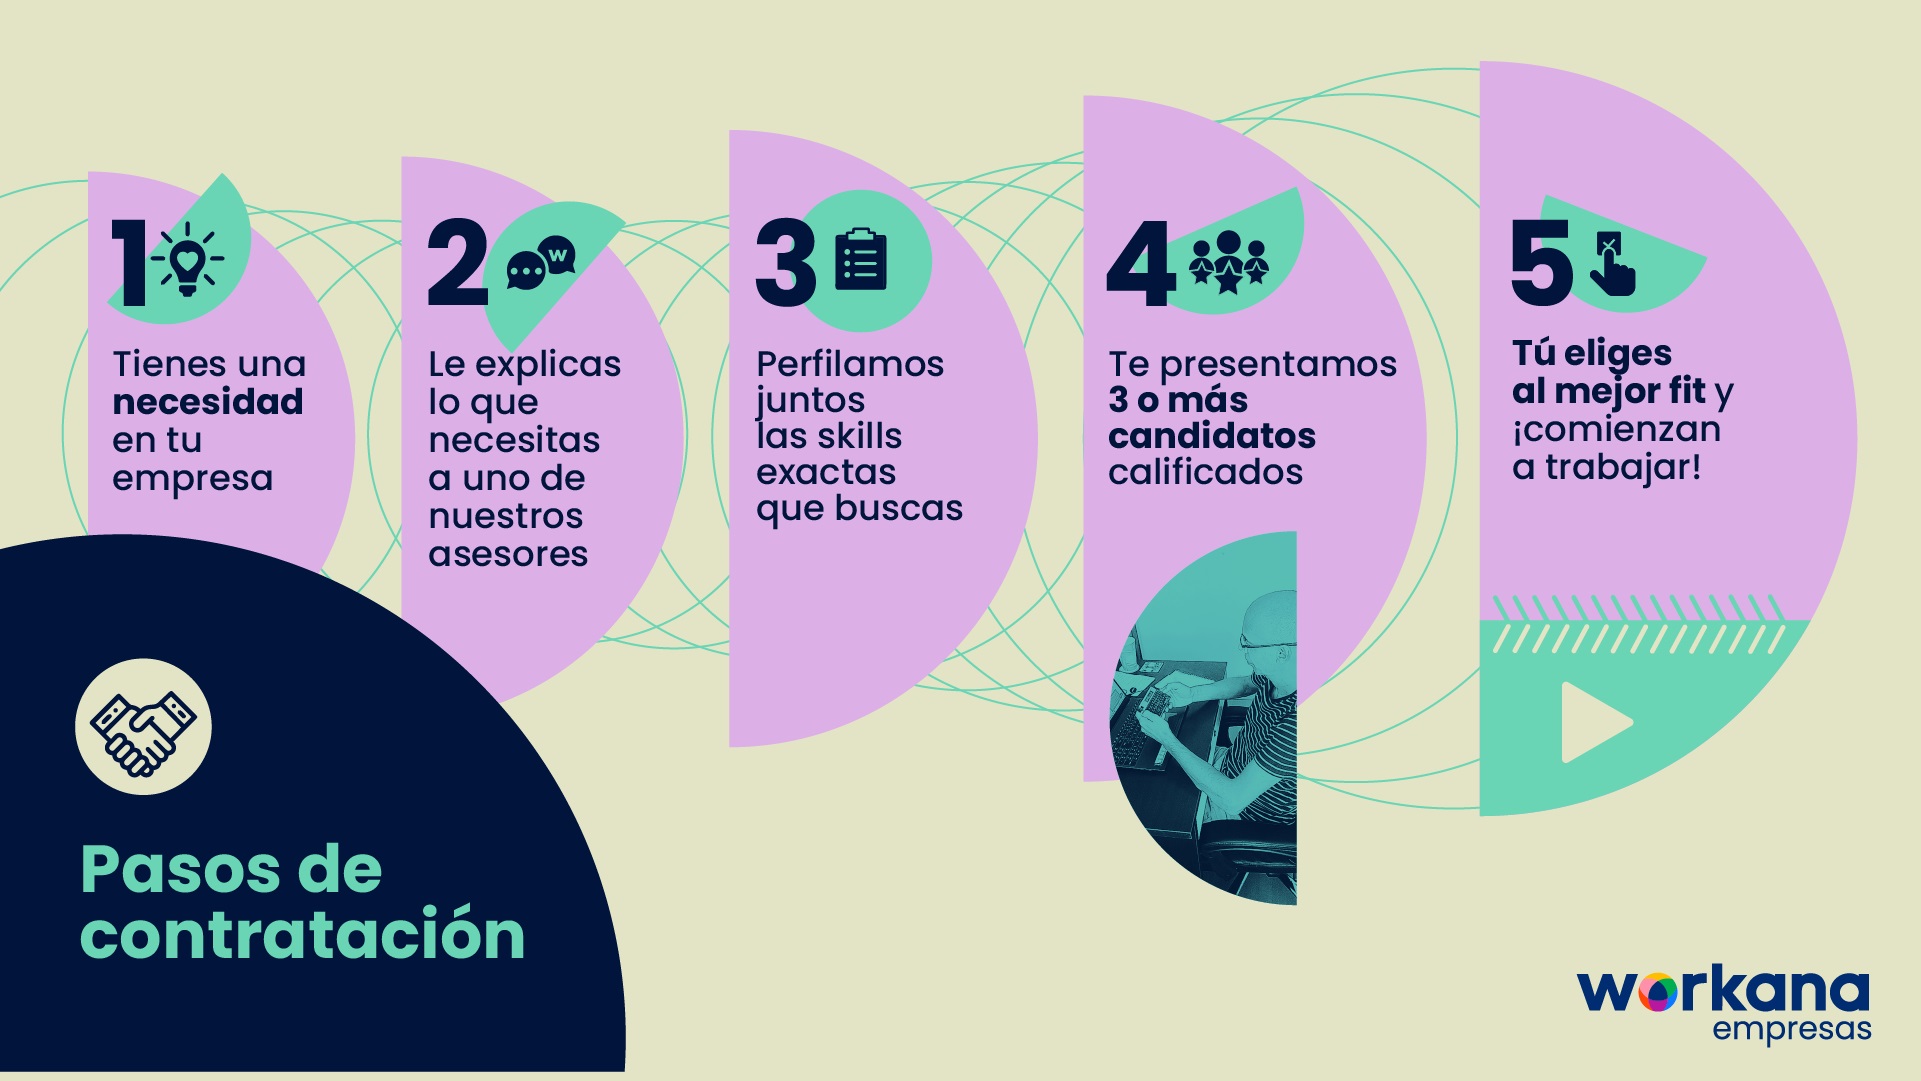 infografia workana empresas - consultoría de talentos remotos ES